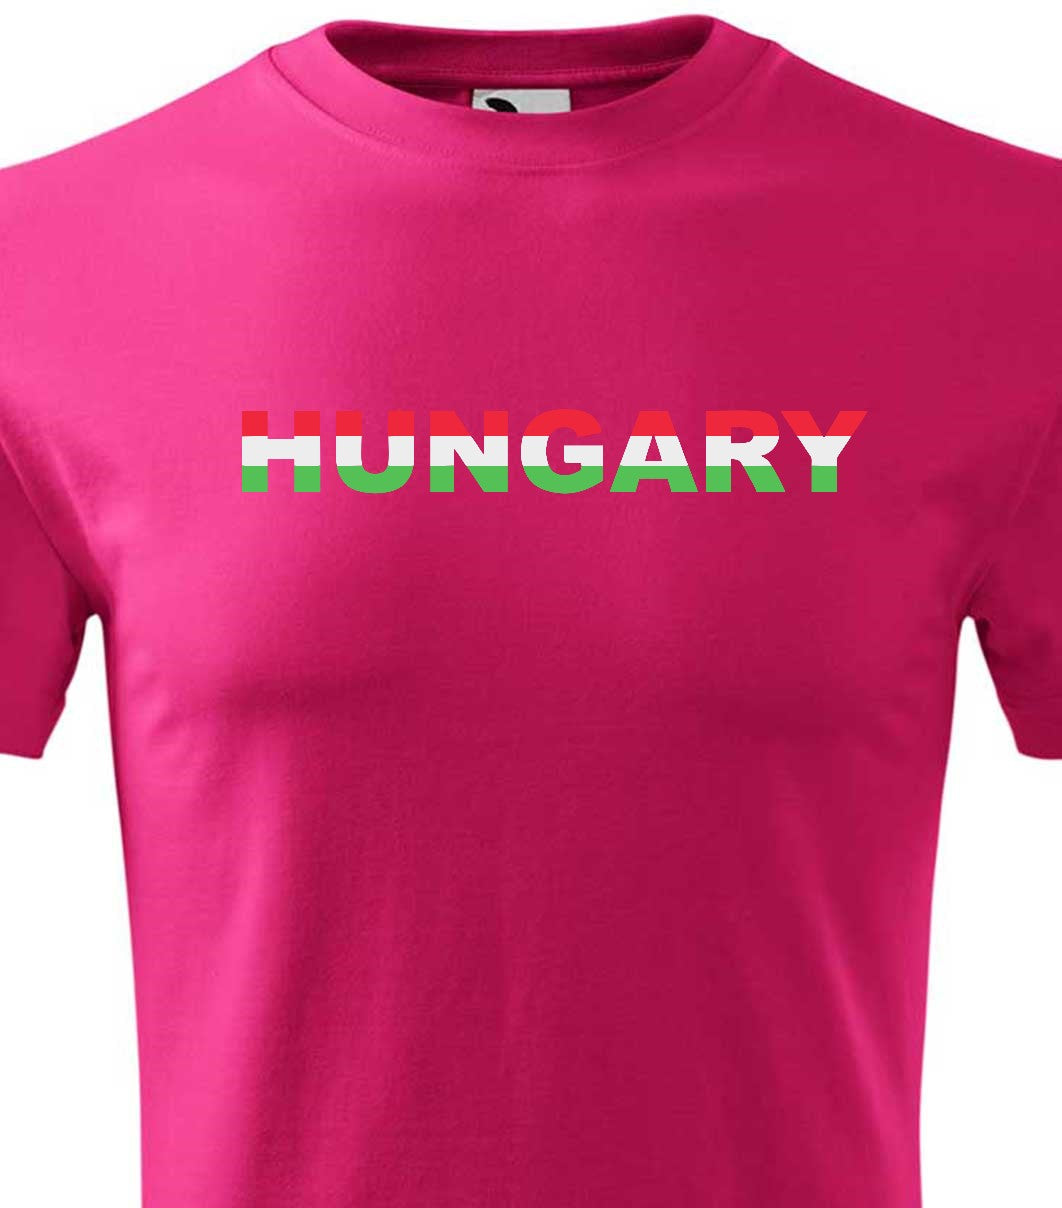 Magyarország 2 férfi technikai póló